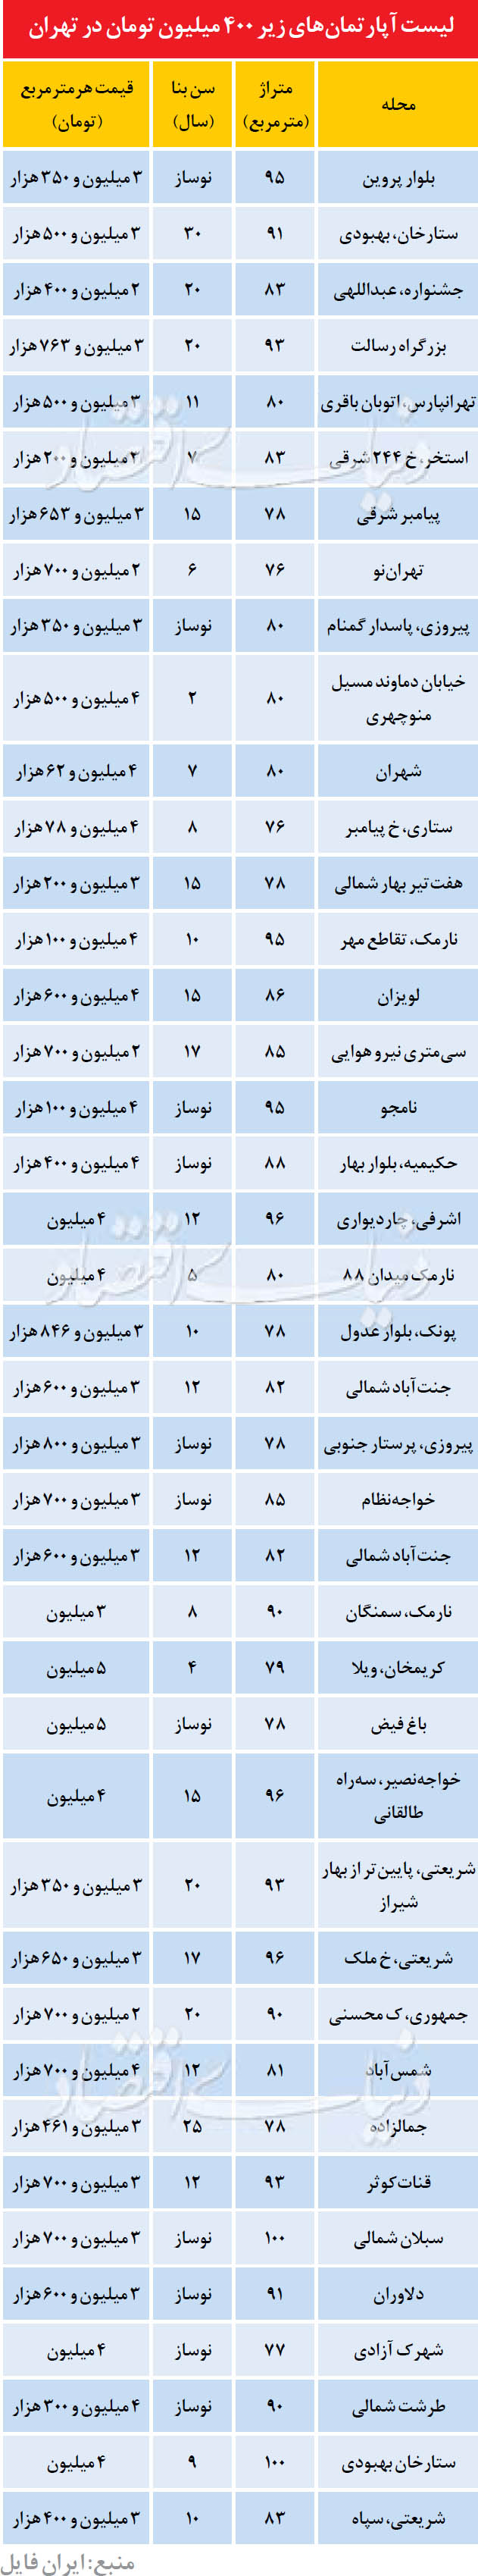 آپارتمان های زیر 400 میلیون در تهران /جدول